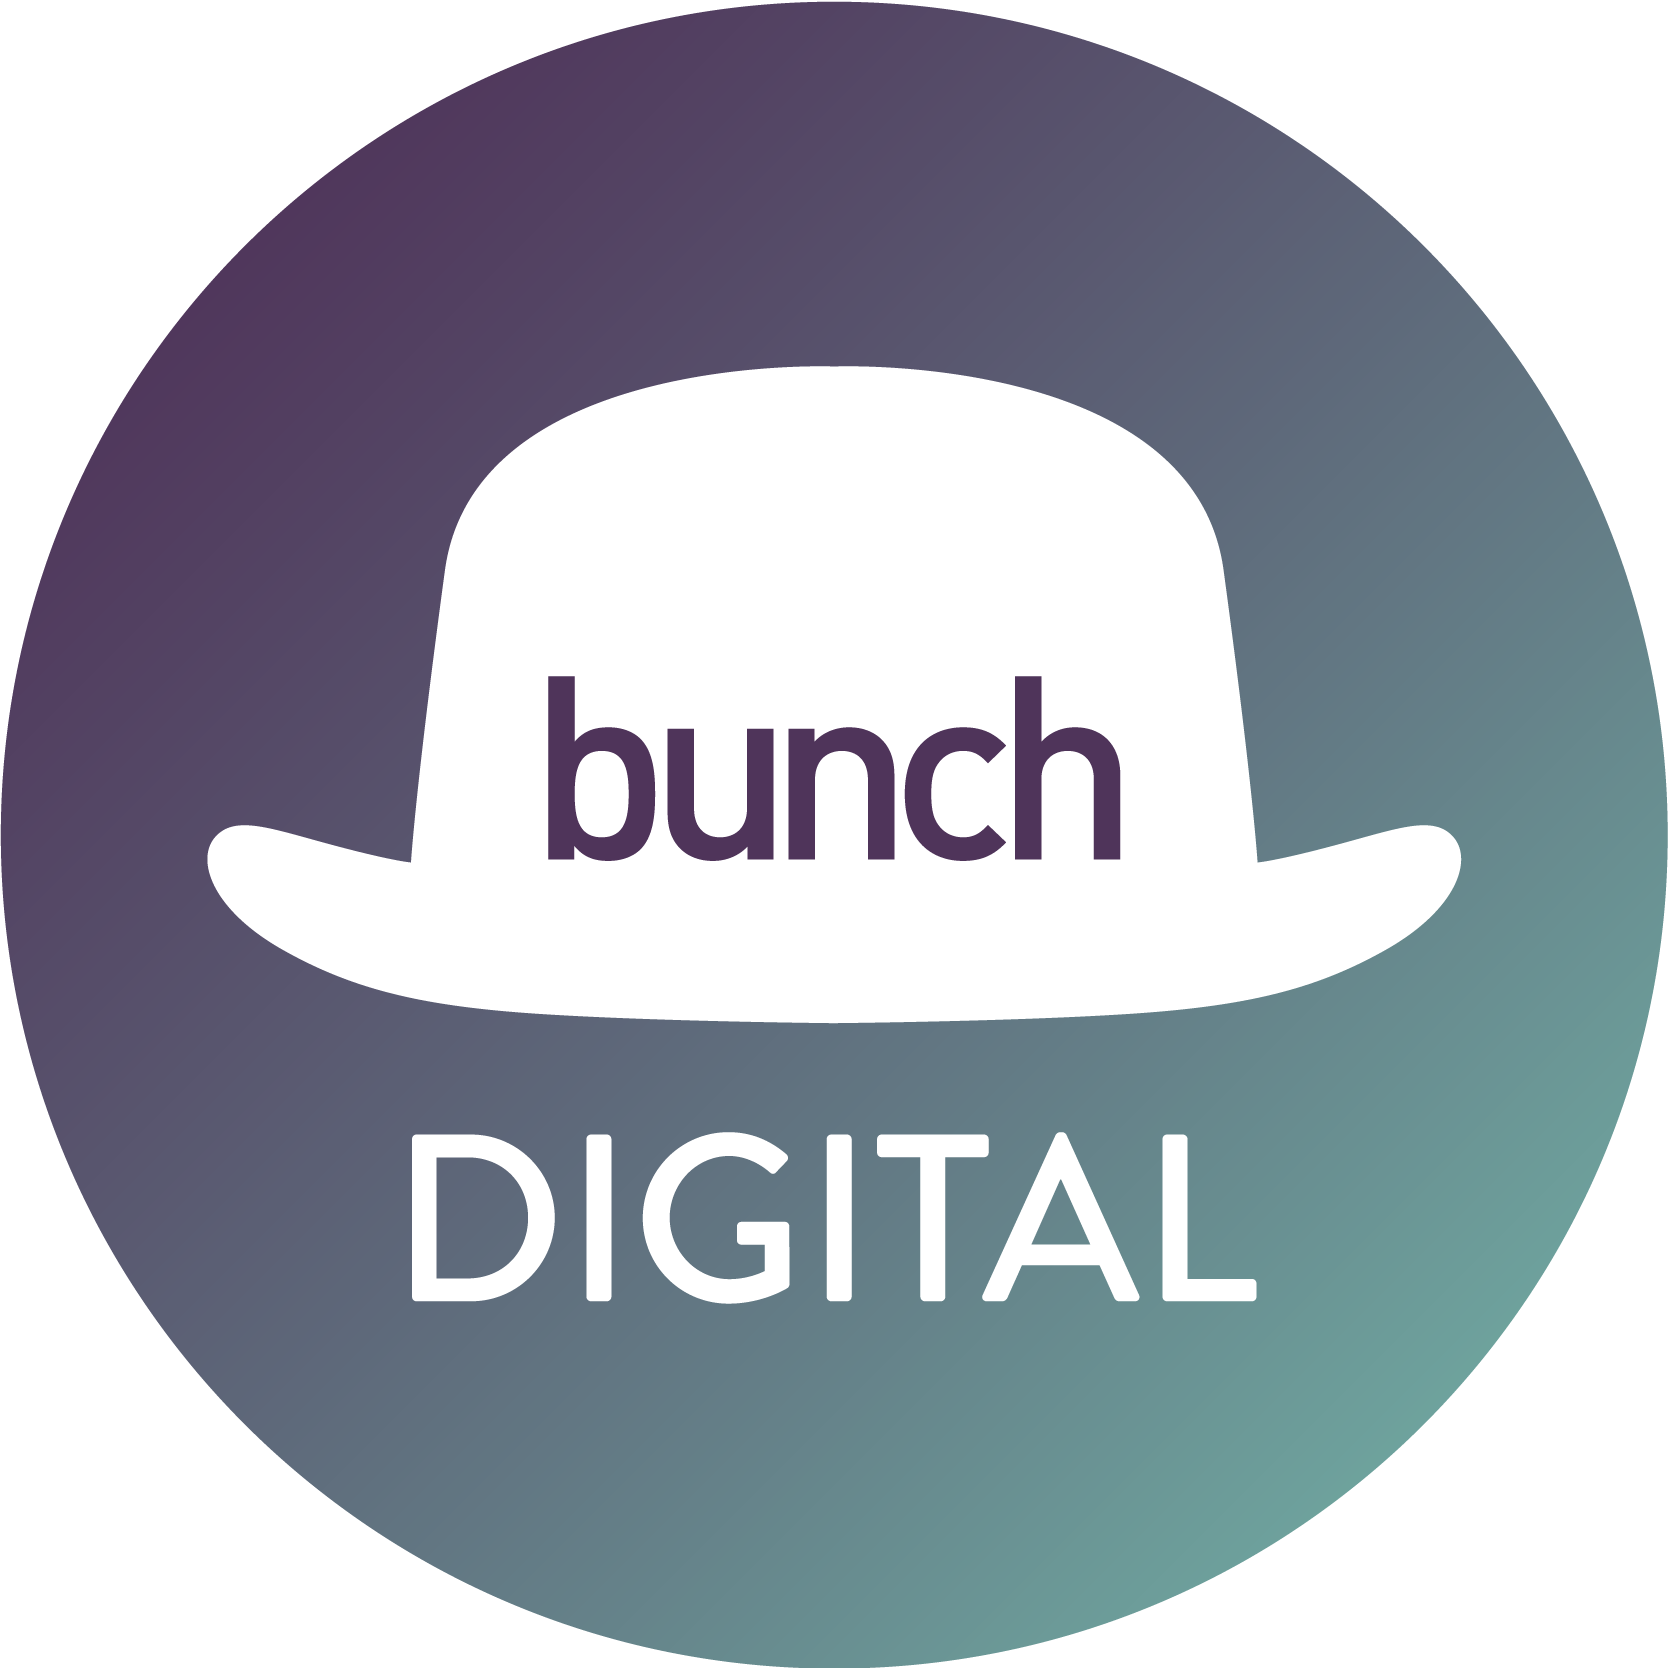 Bunch Digital